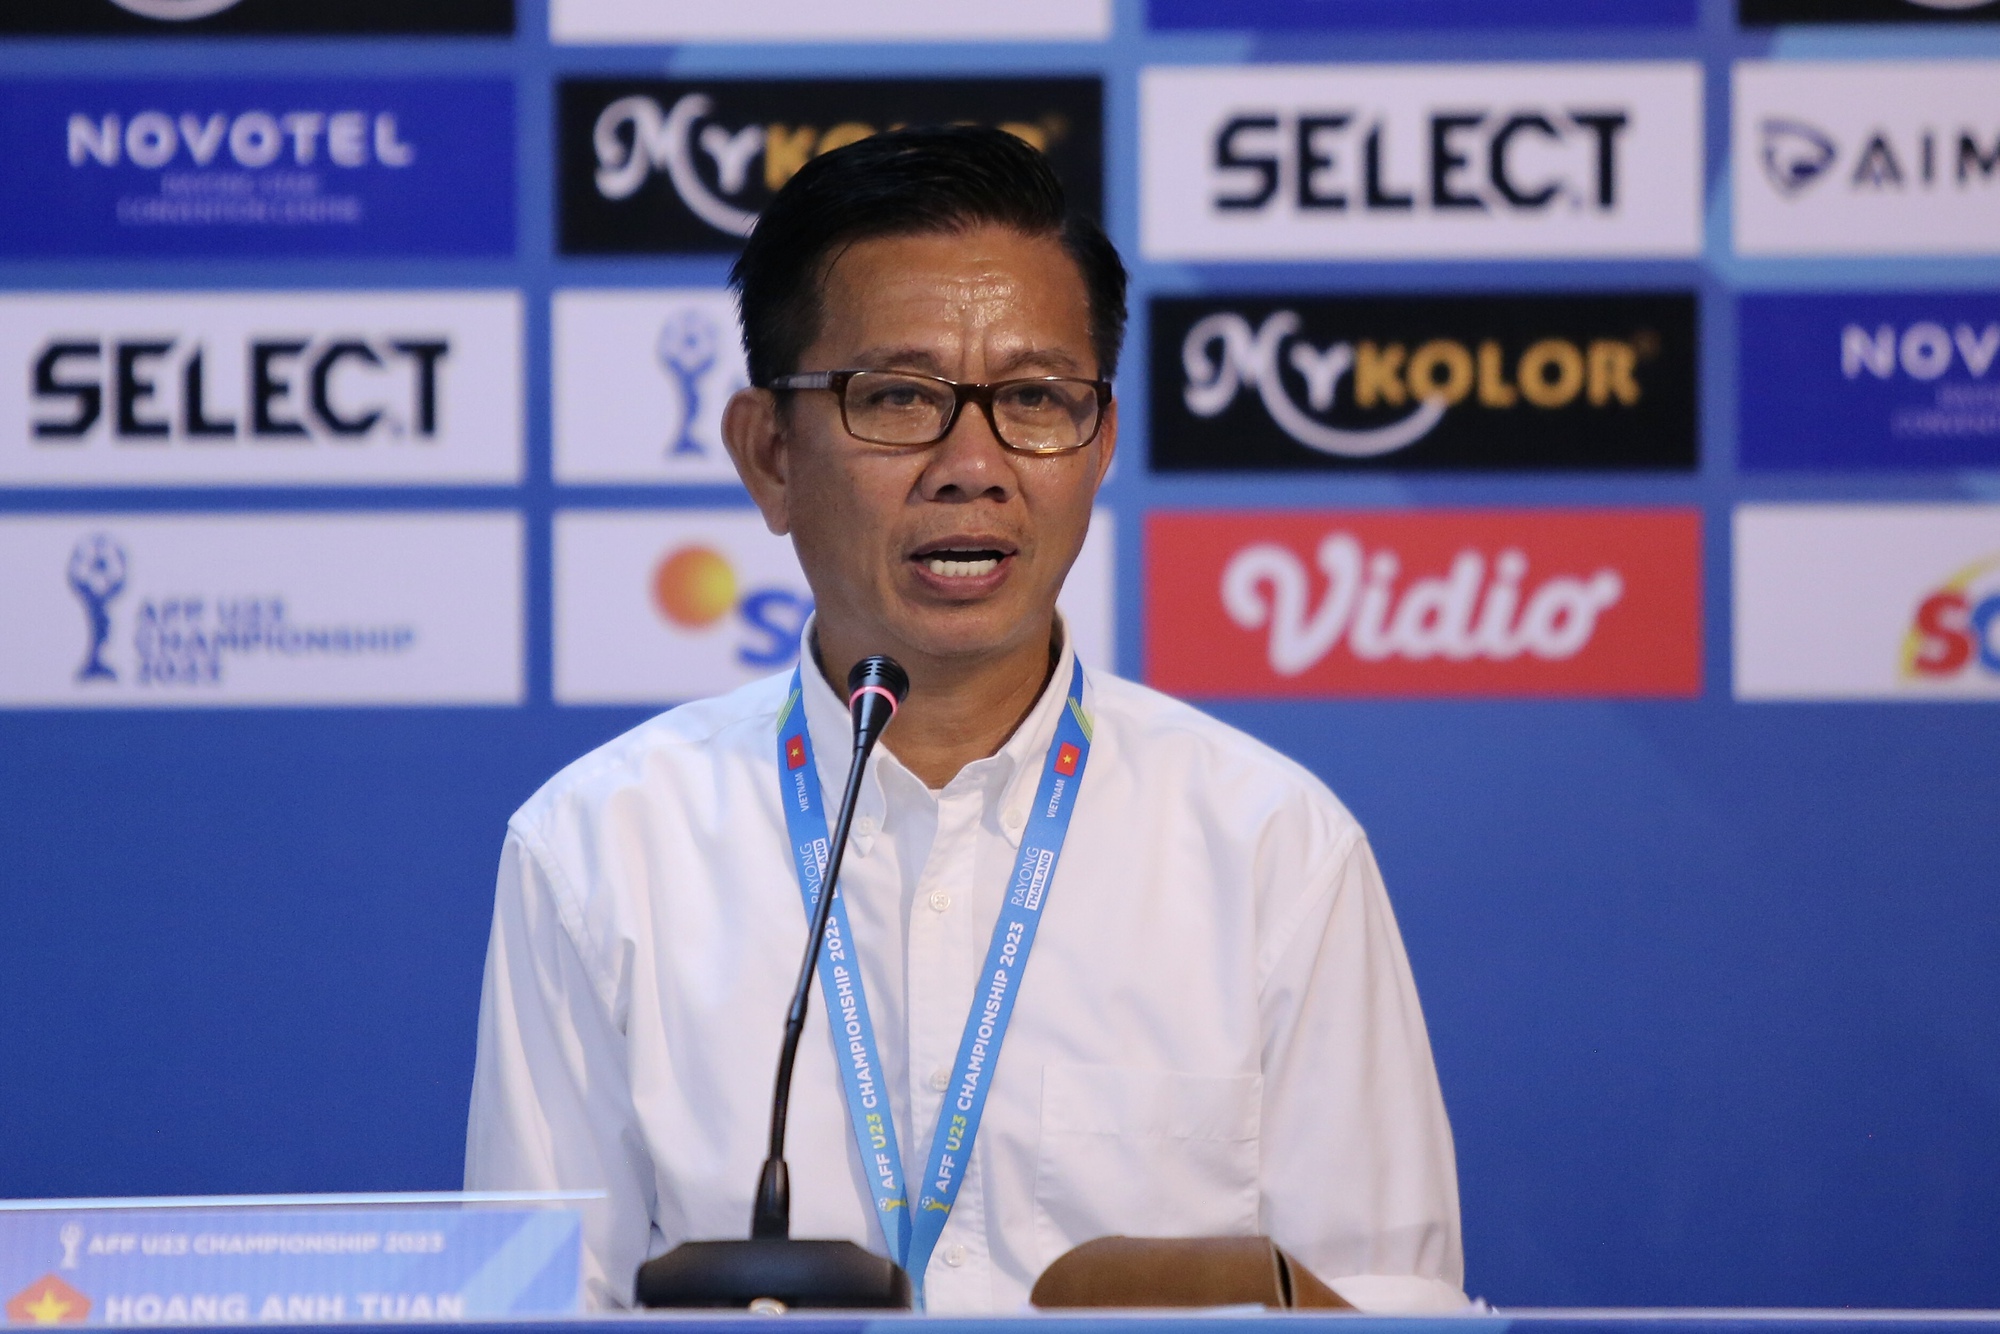 HLV U.23 Việt Nam 'muốn quên trận đấu', không hài lòng với một cầu thủ - Ảnh 1.